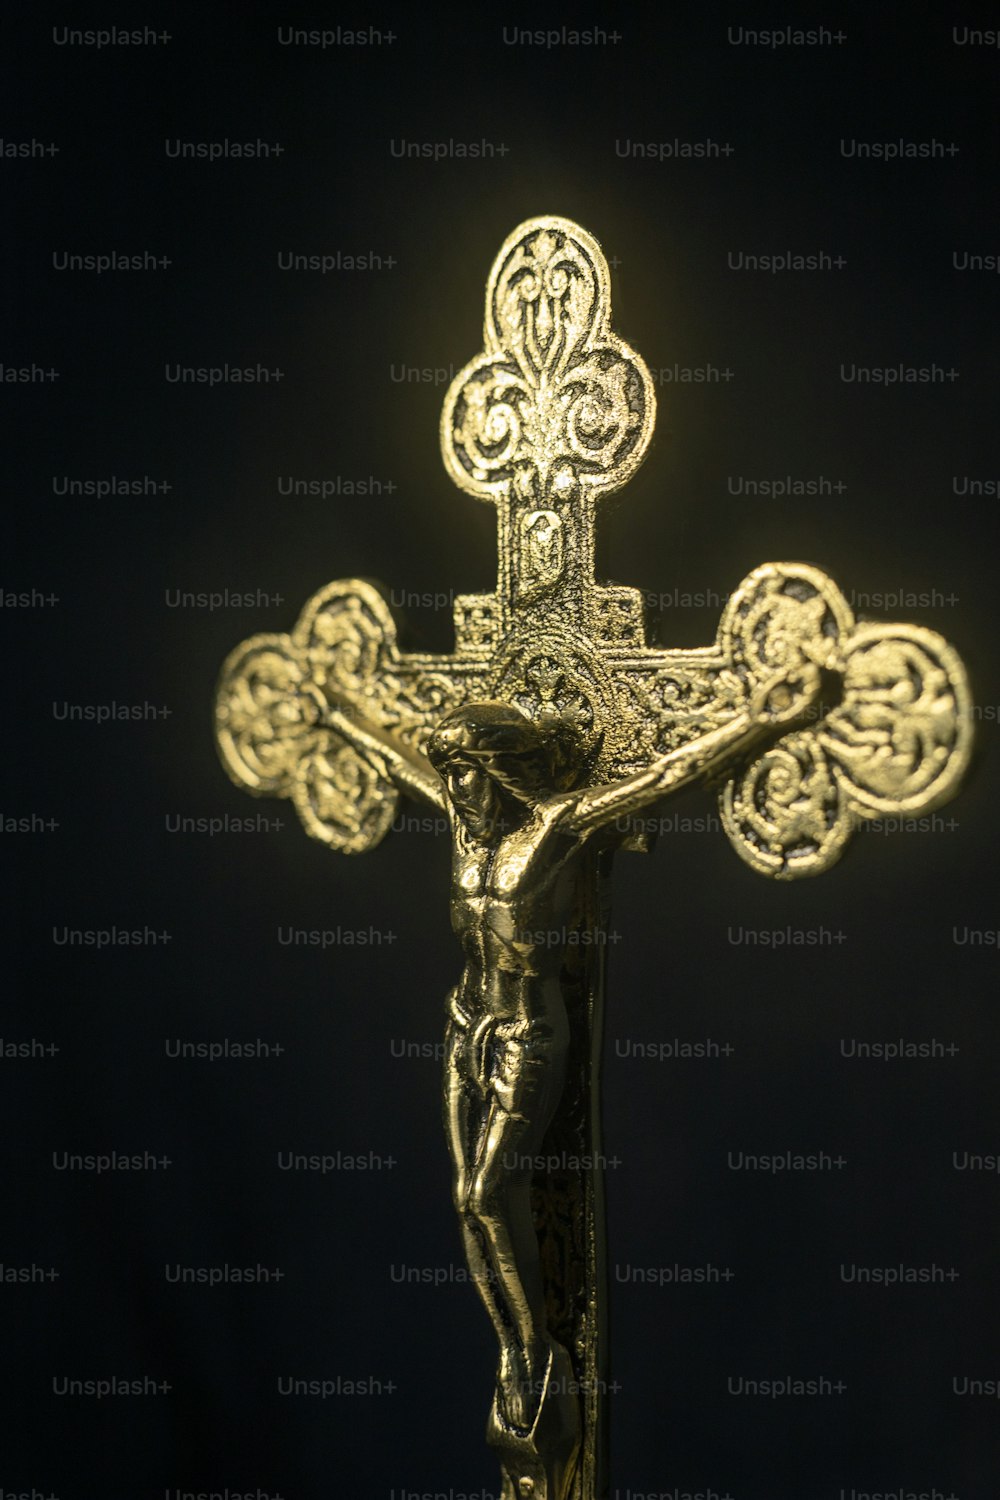 Un crucifix doré sur fond noir